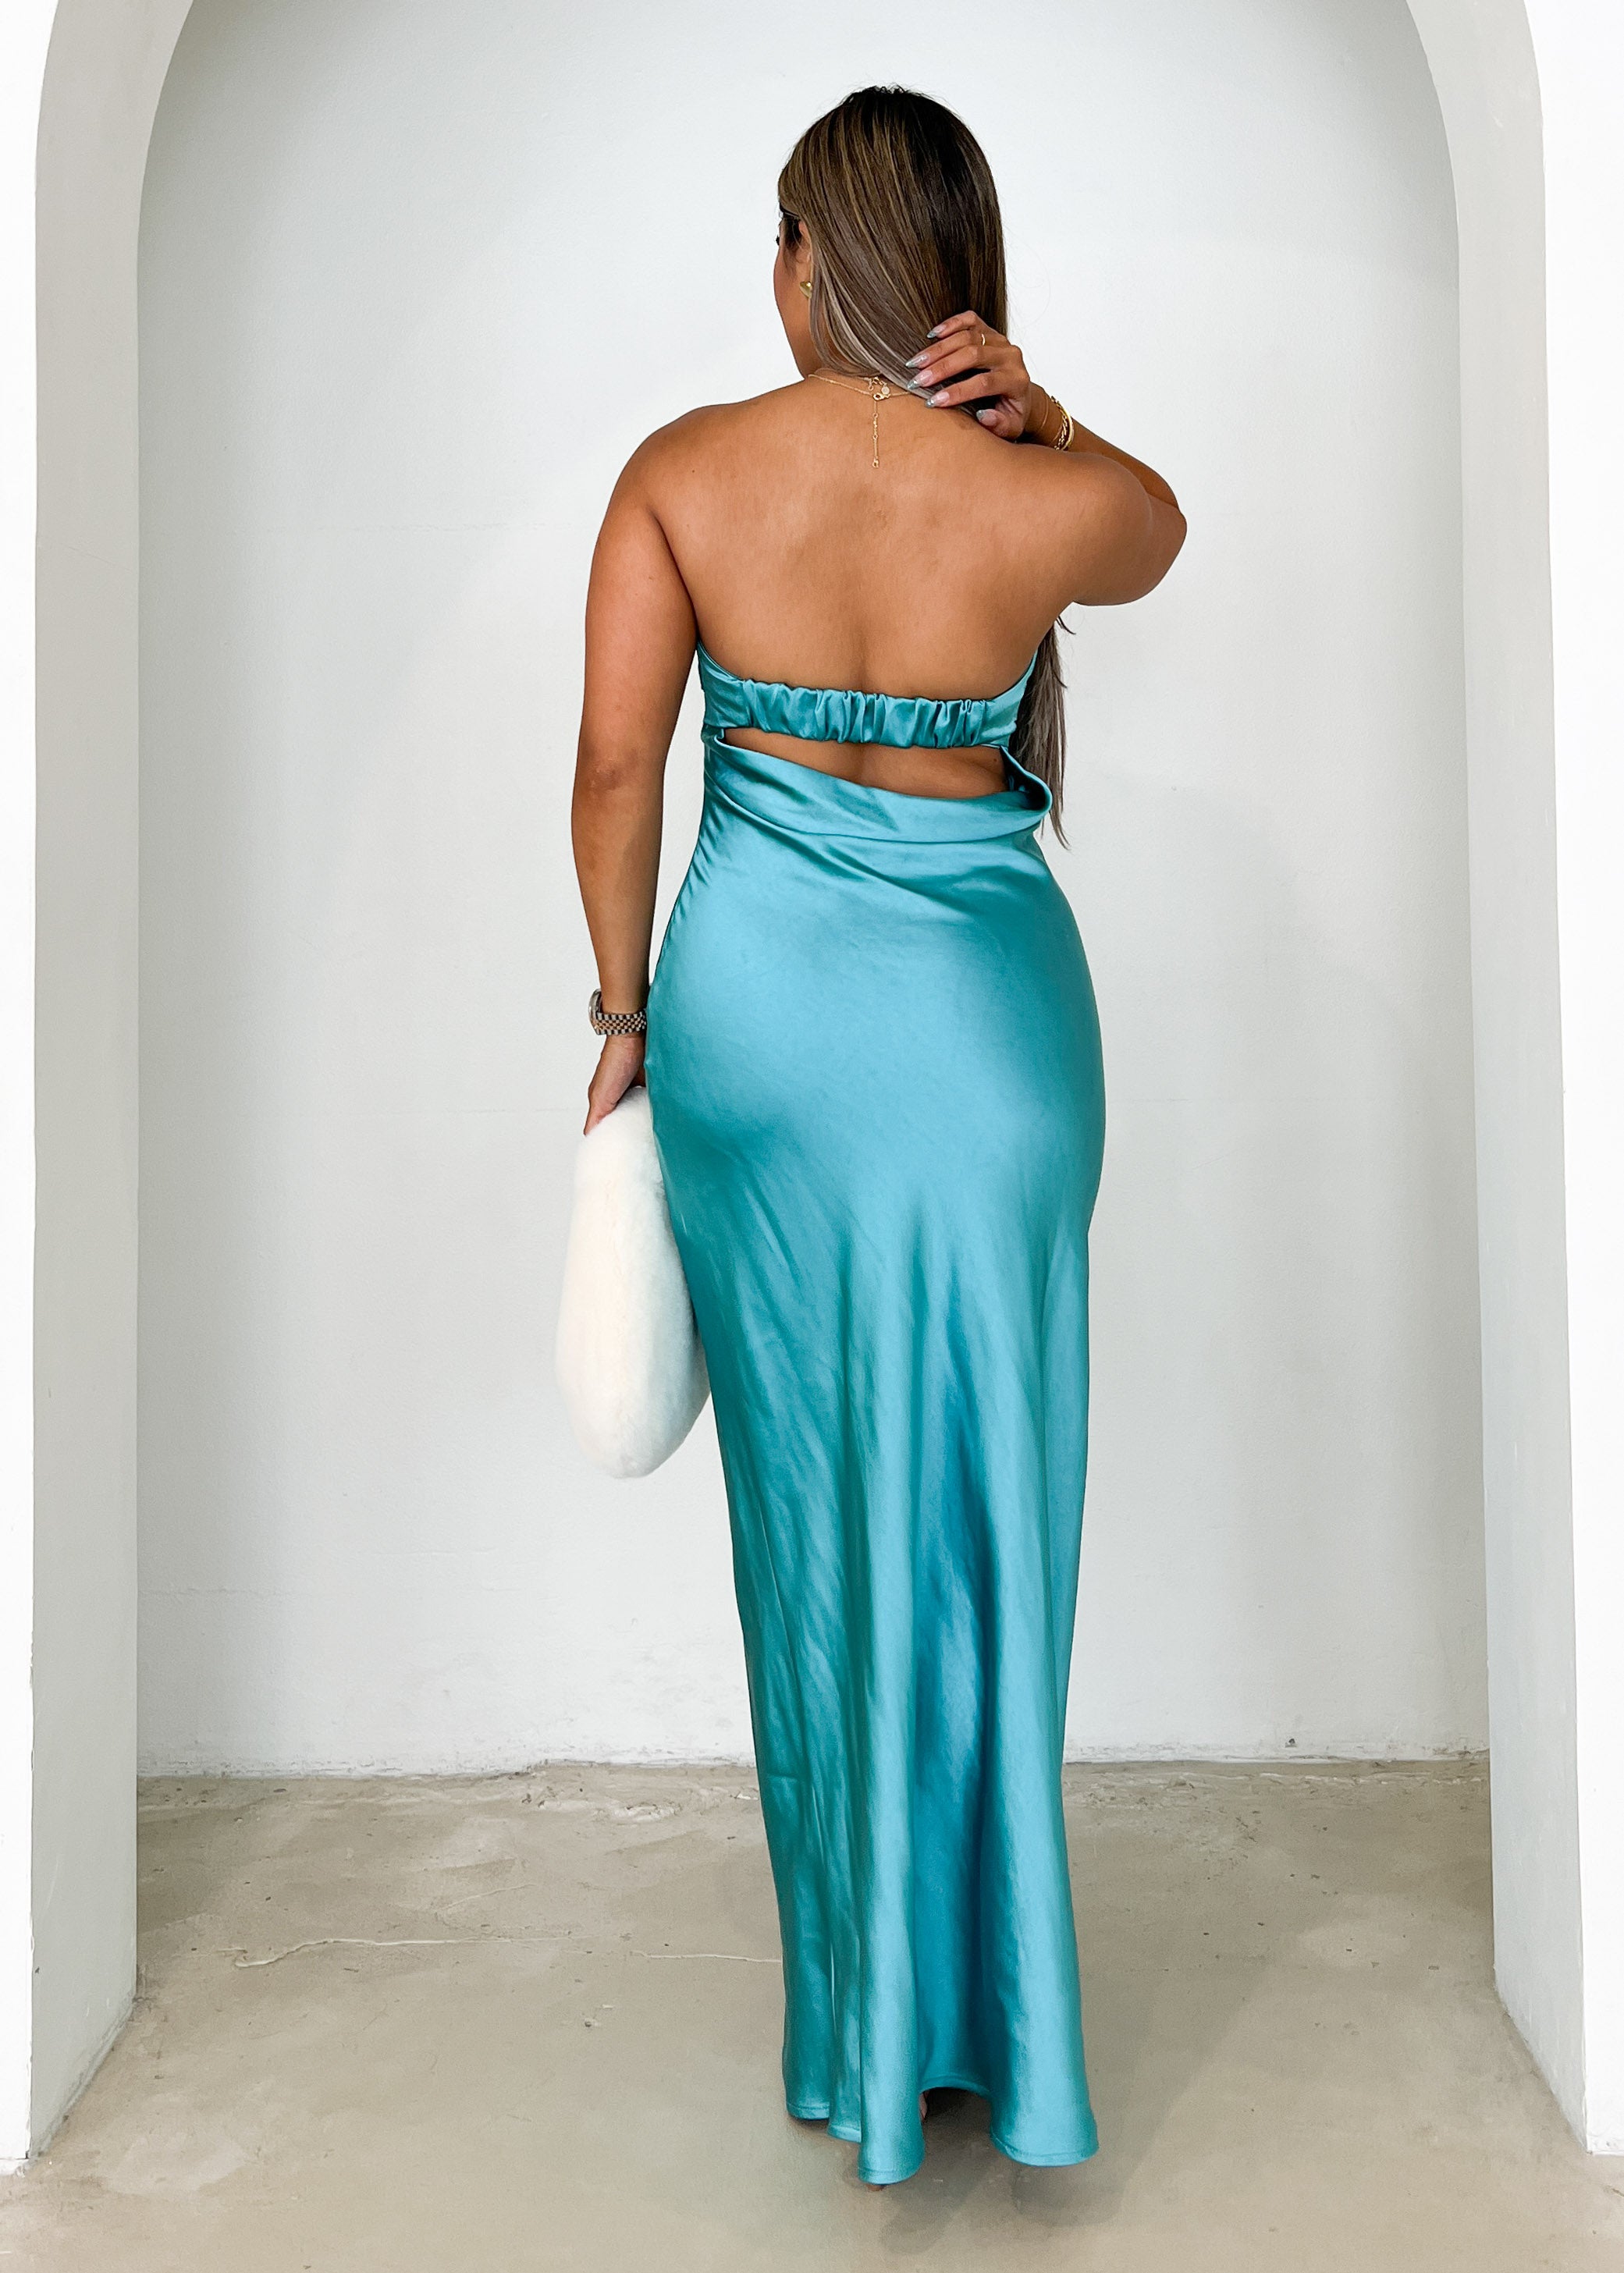 Jammie Midi Dress - Turquoise